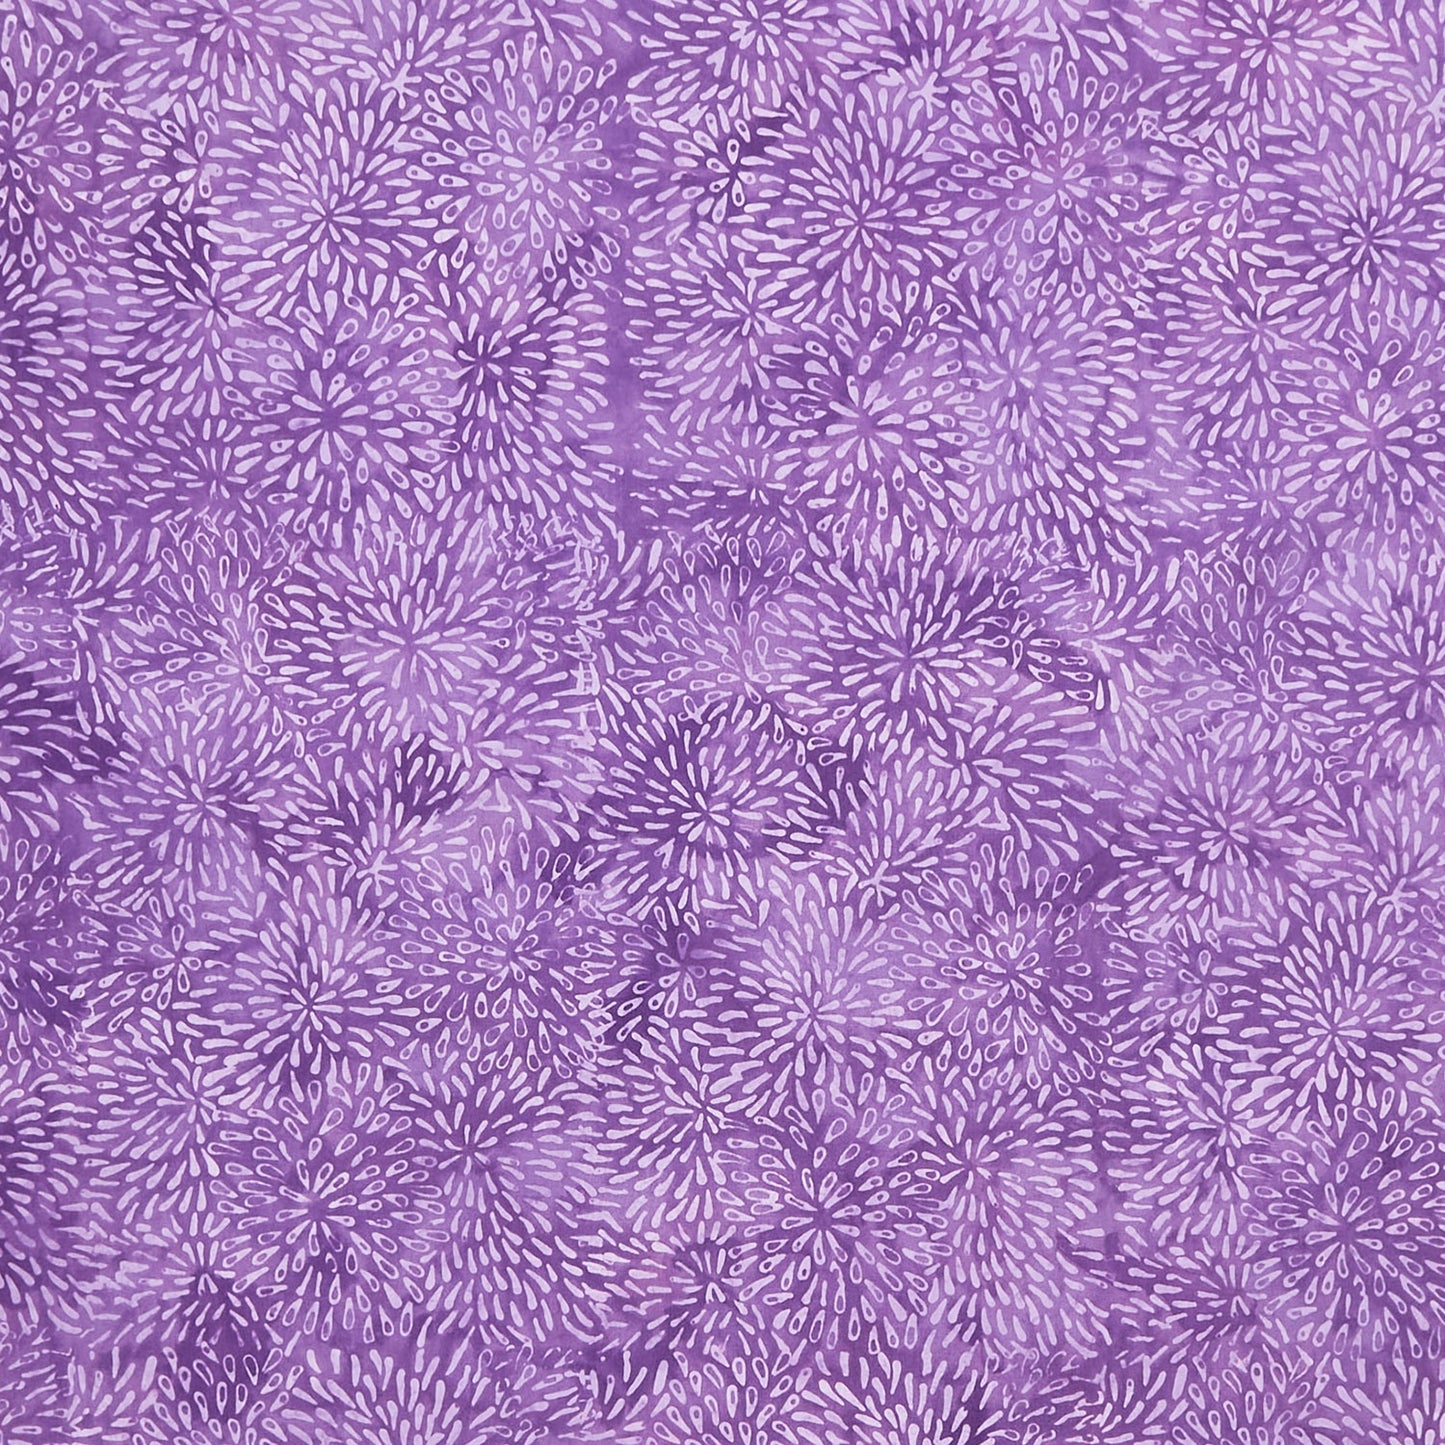 Full Bloom Batiks - Marigold Dark and Light Purple Yardage Primary Image